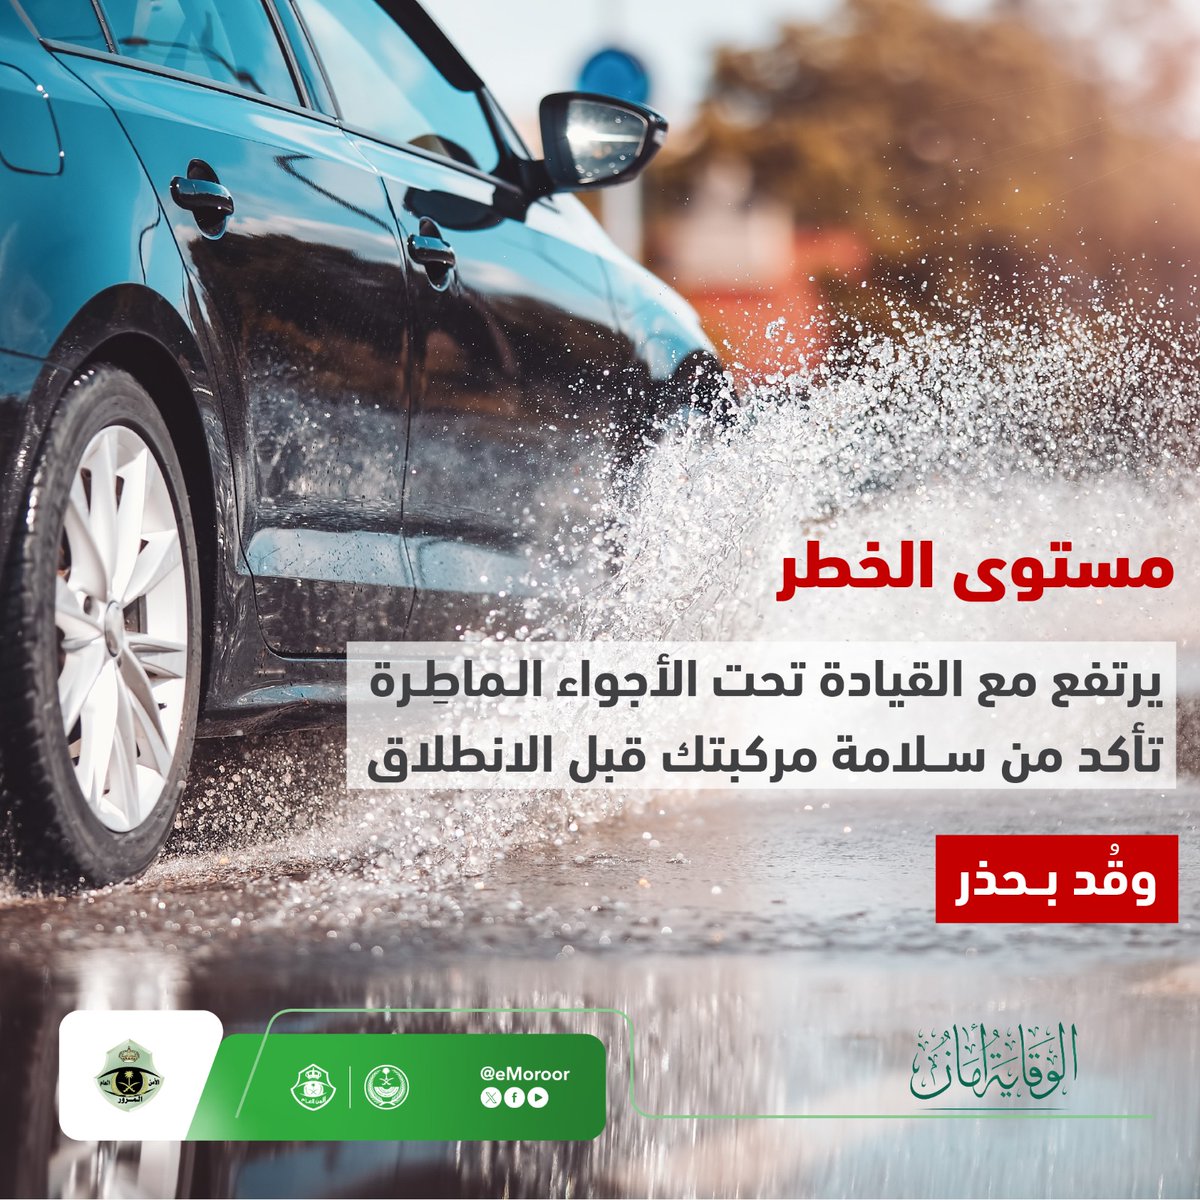 تأكد من سلامة مركبتك قبل القيادة تحت الأجواء الماطرة. #المرور_السعودي #الوقاية_أمان